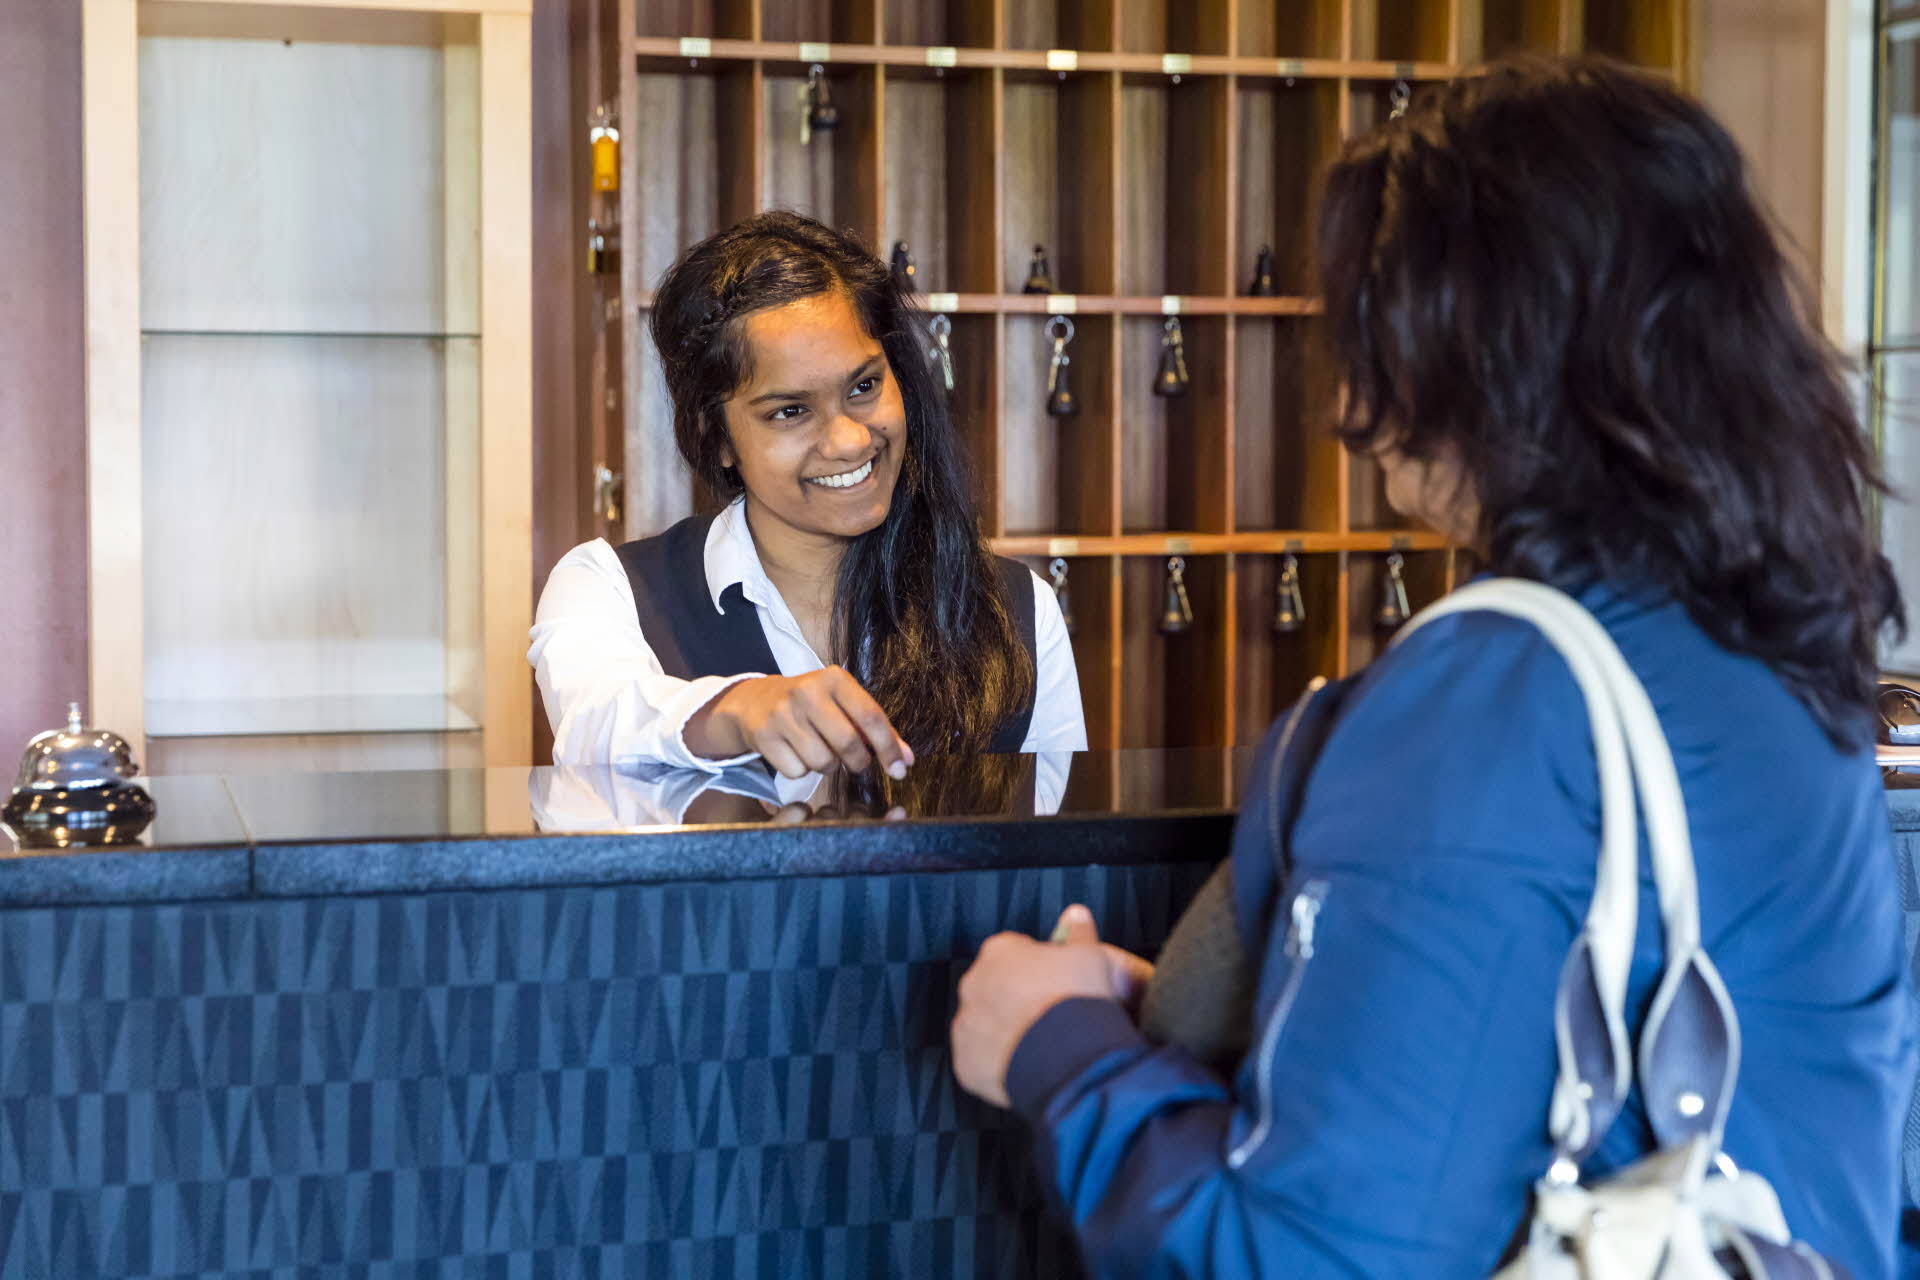 Una mujer con chaqueta azul en una recepción. Una recepcionista sonriente entregando una llave.